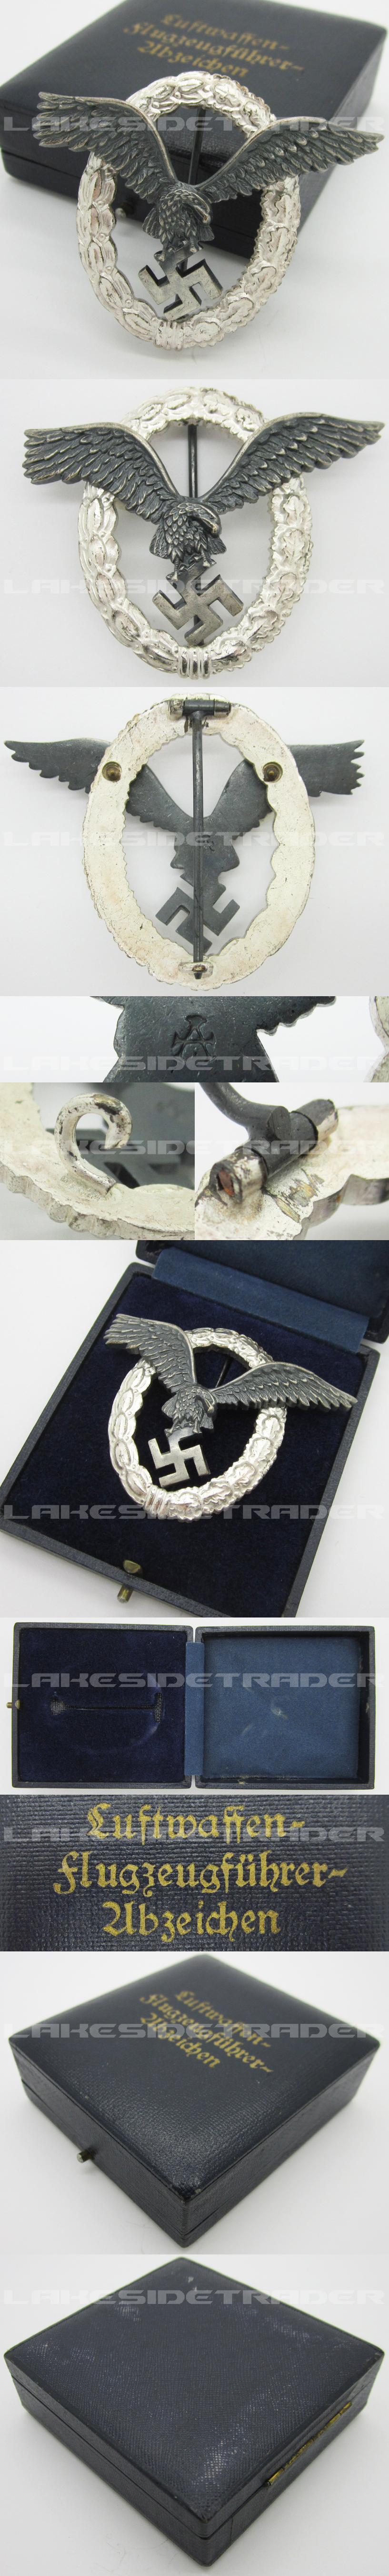 Cased Luftwaffe Pilot Badge by Assmann